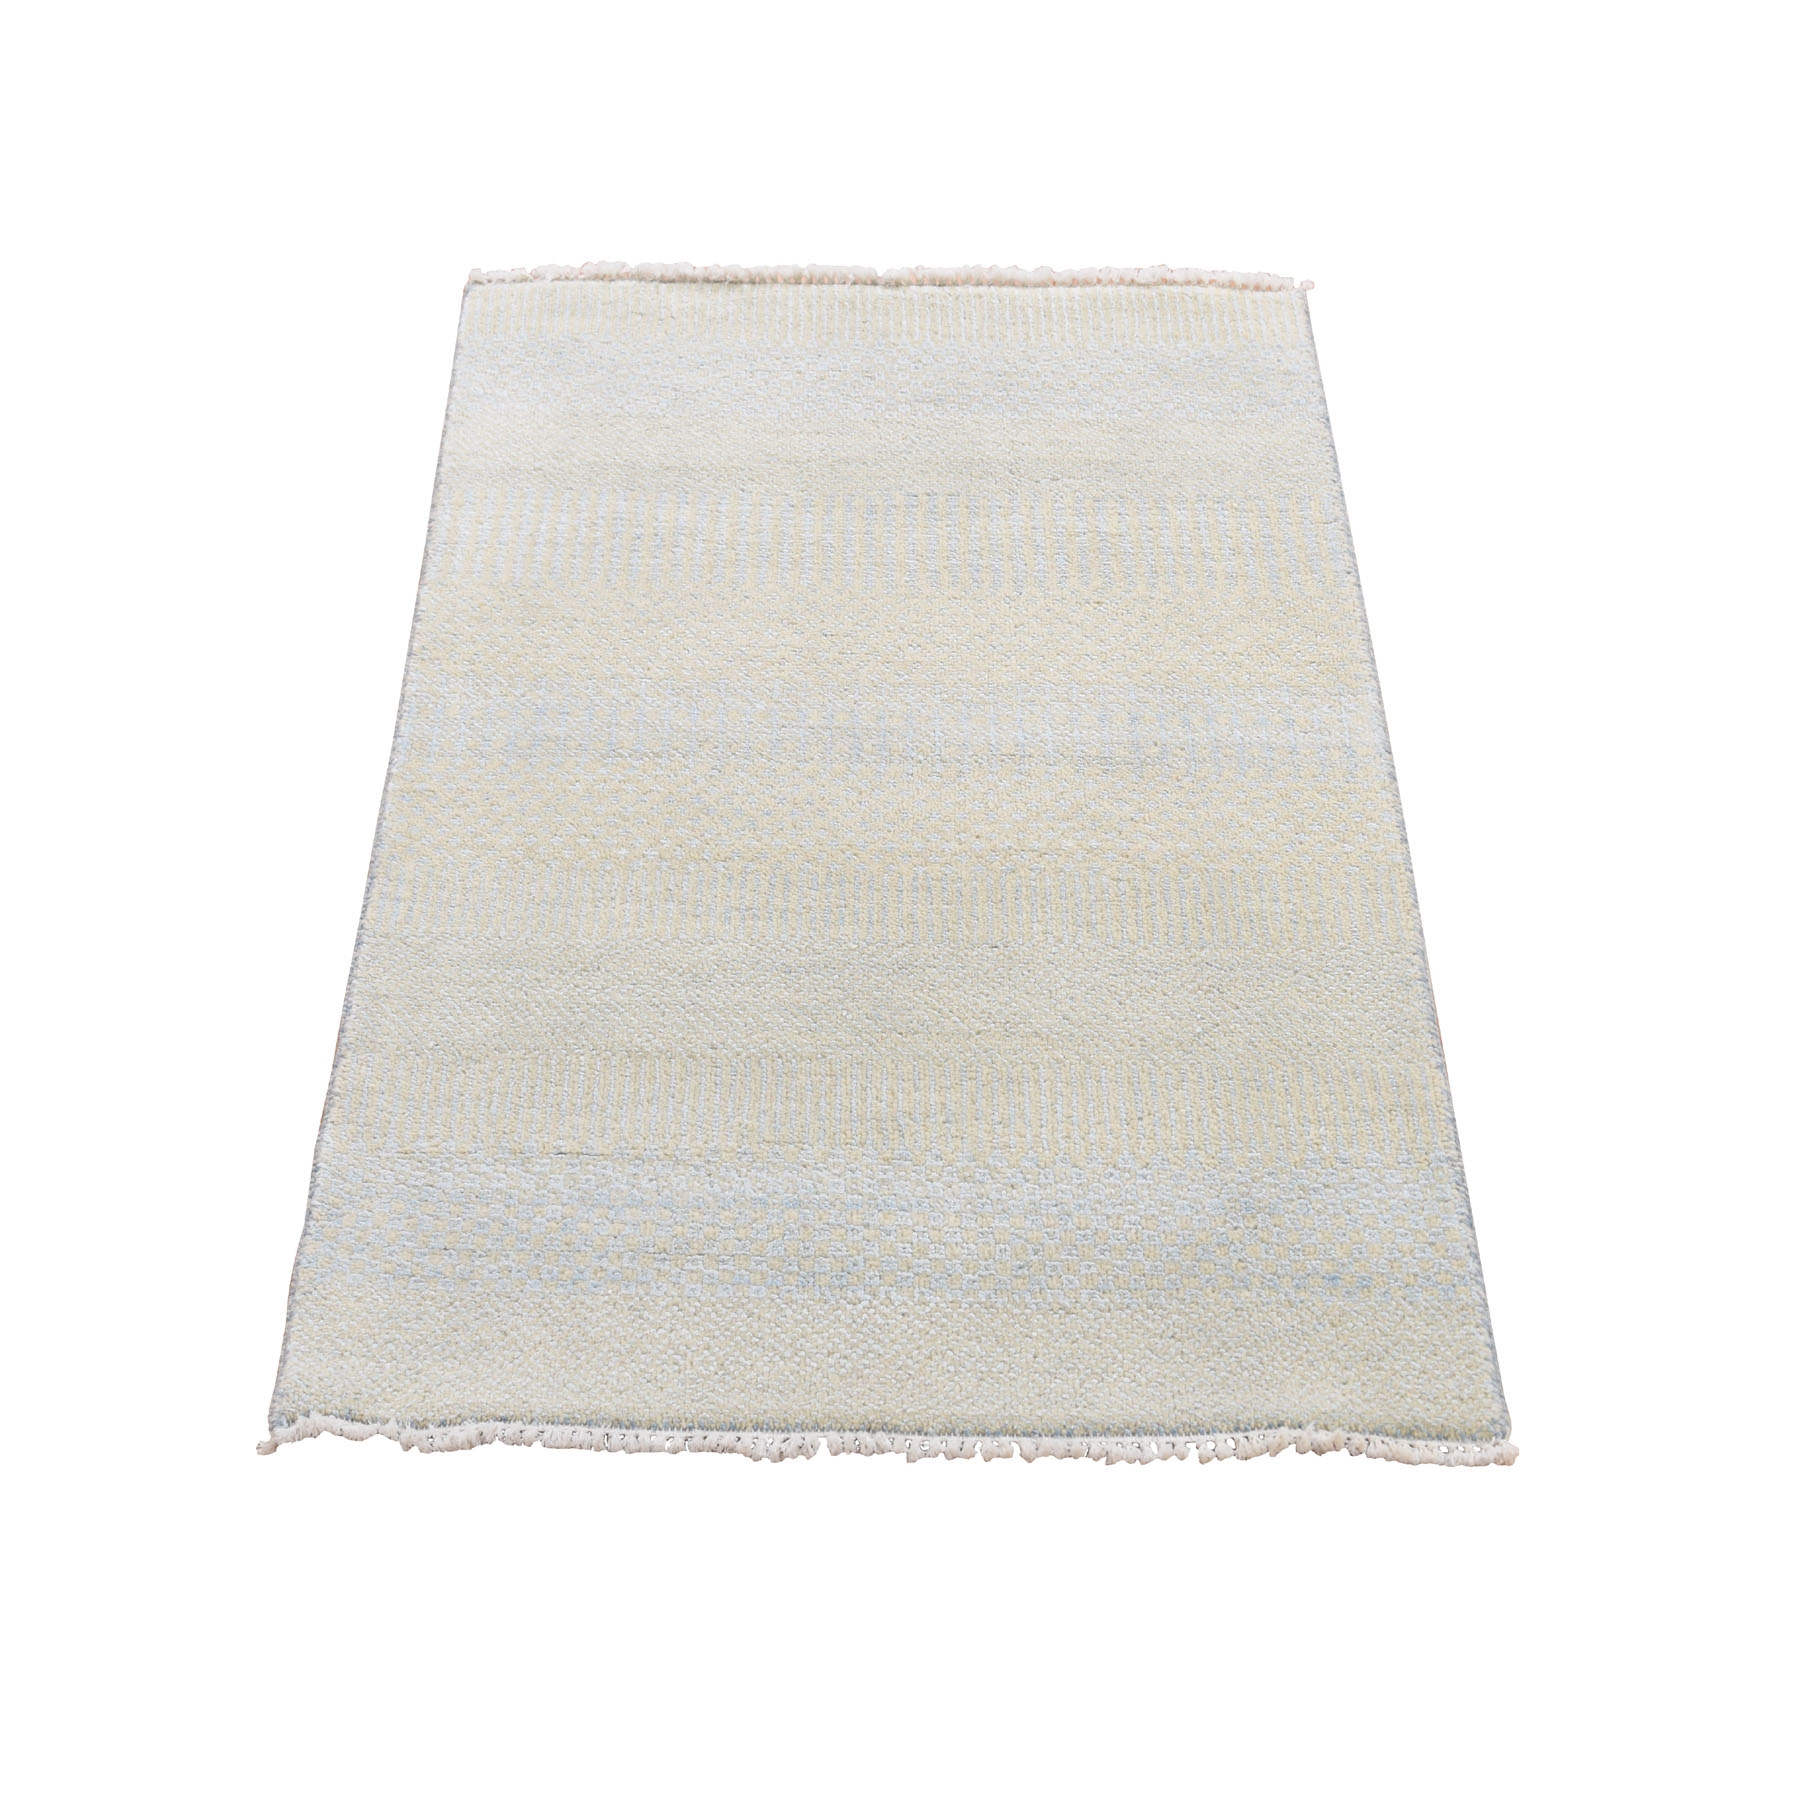 2'x3'1" Hand Woven Wool and Silk Grass Design Oriental Rug 